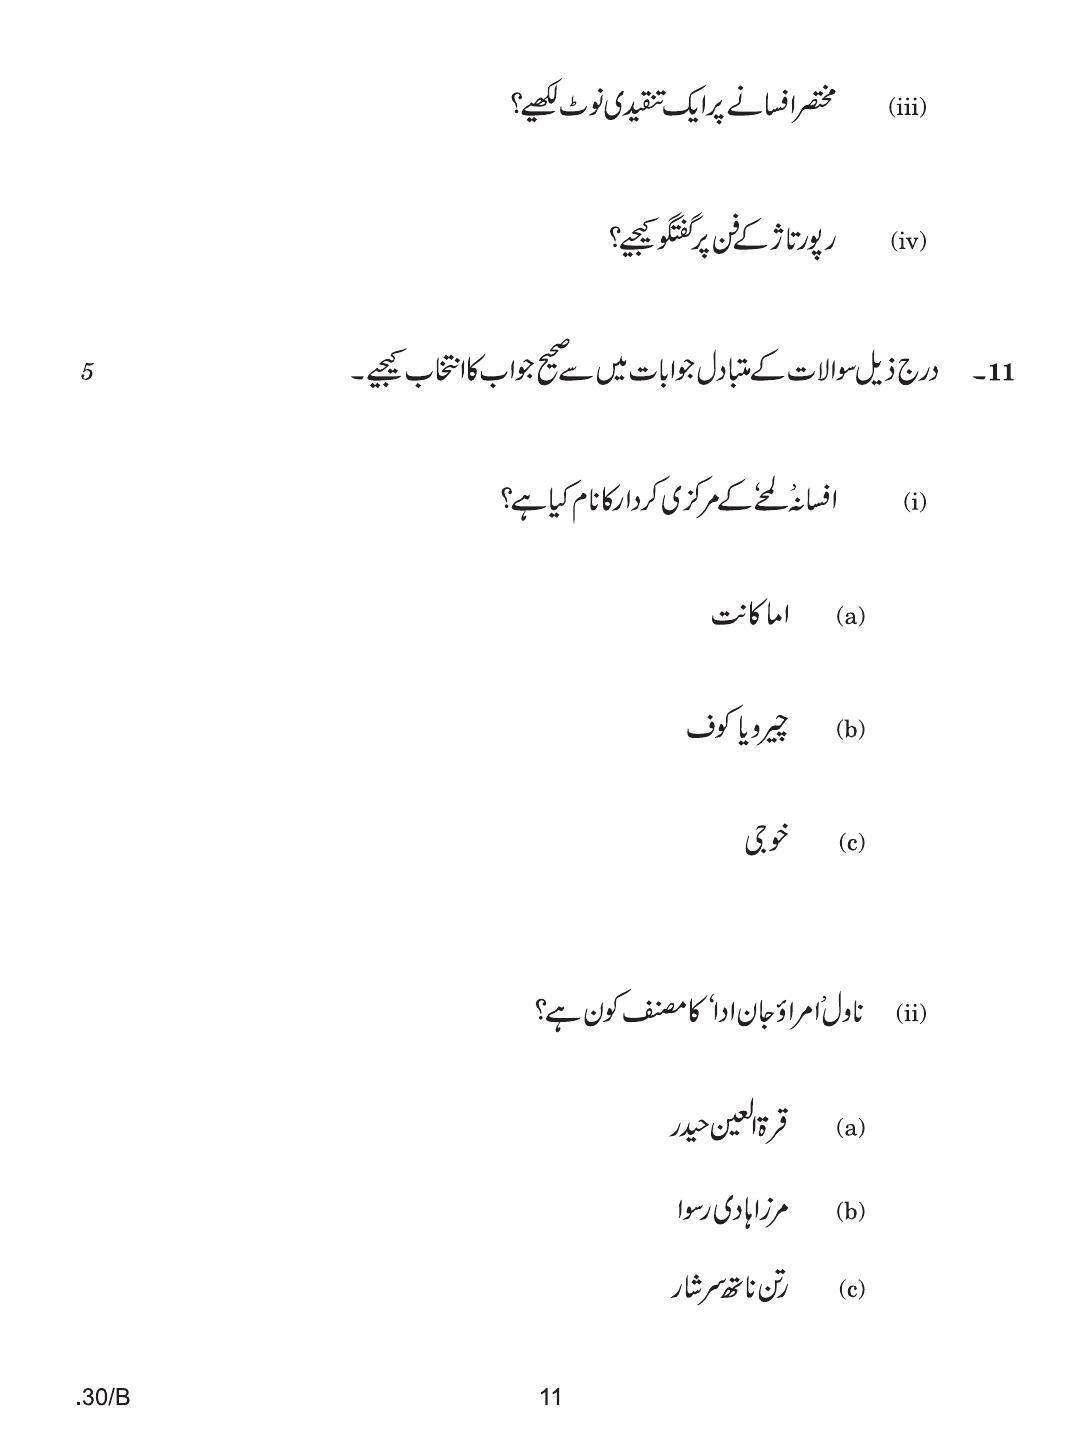 CBSE Class 12 Urdu Elective 2020 Compartment Question Paper - Page 11